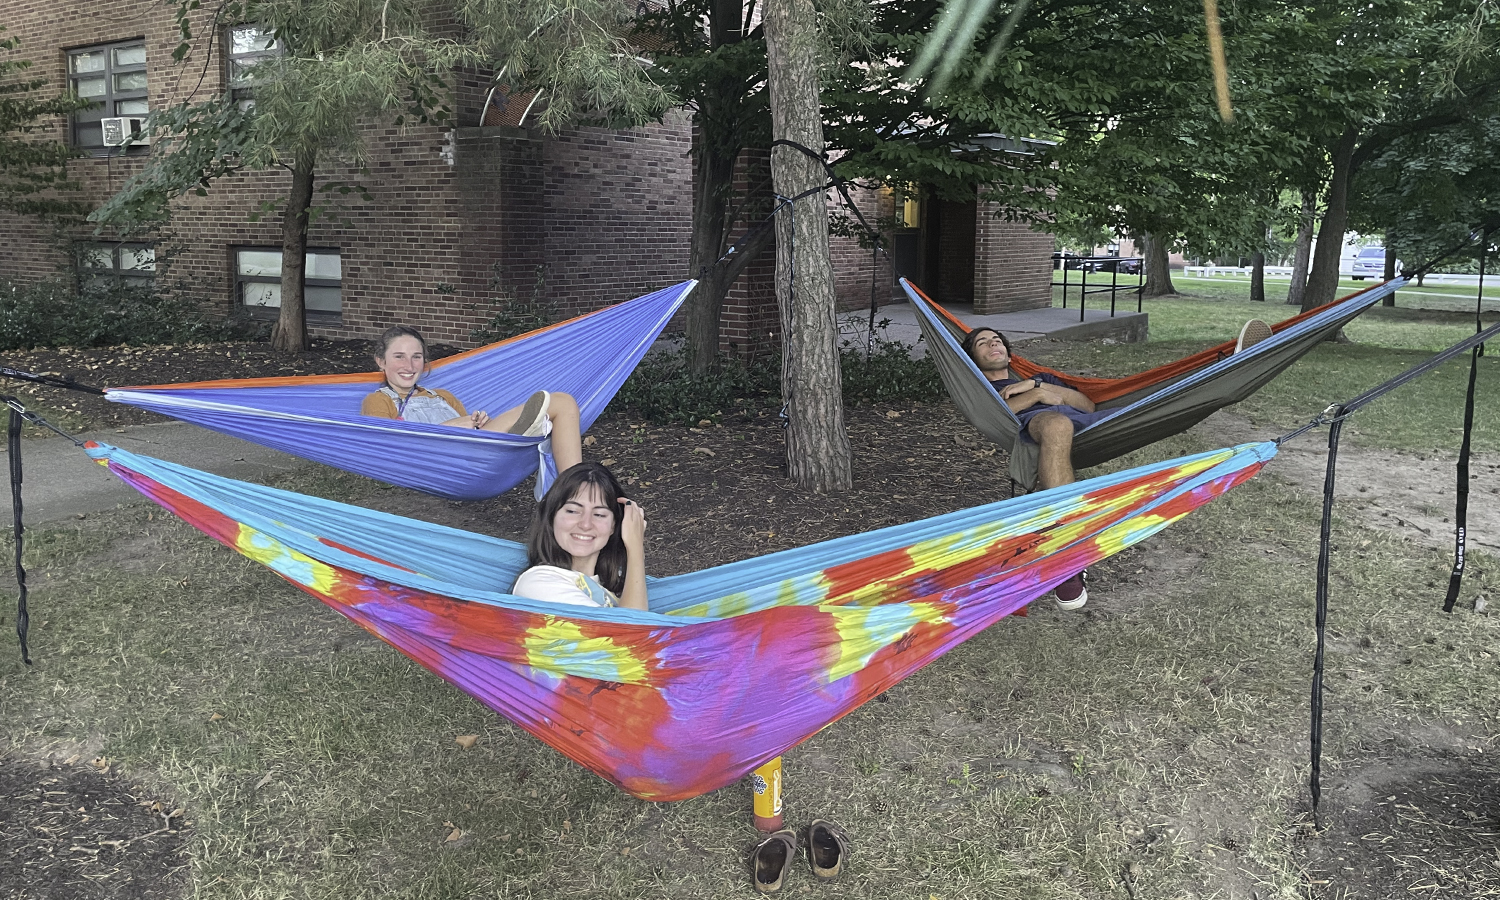 Goldman and friends in hammocks